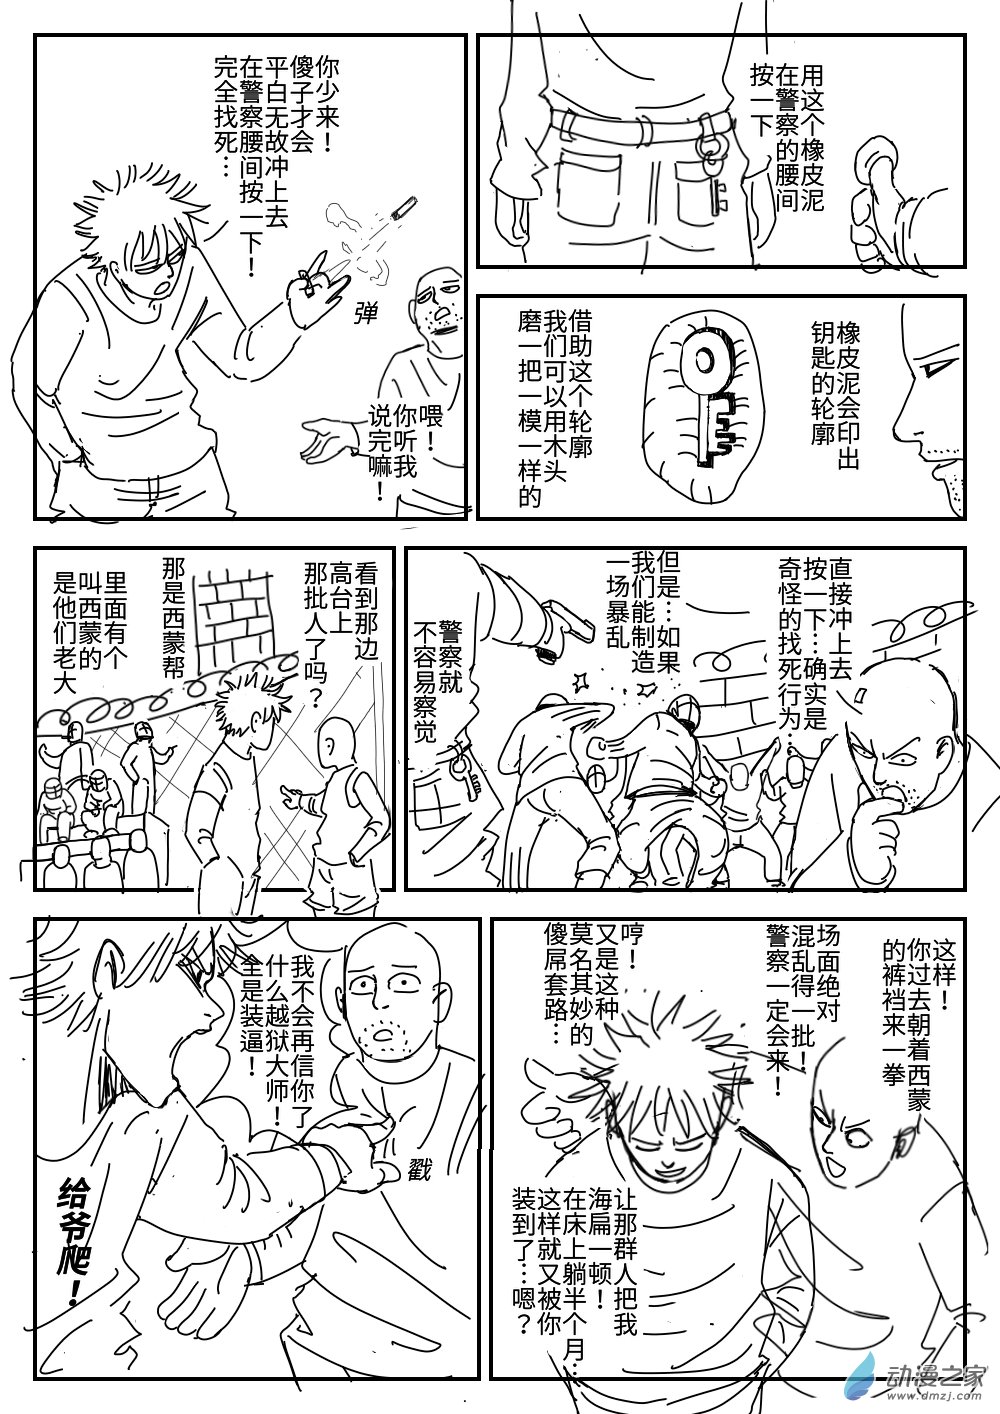 K神的短篇漫畫集 - 04 越獄 - 1